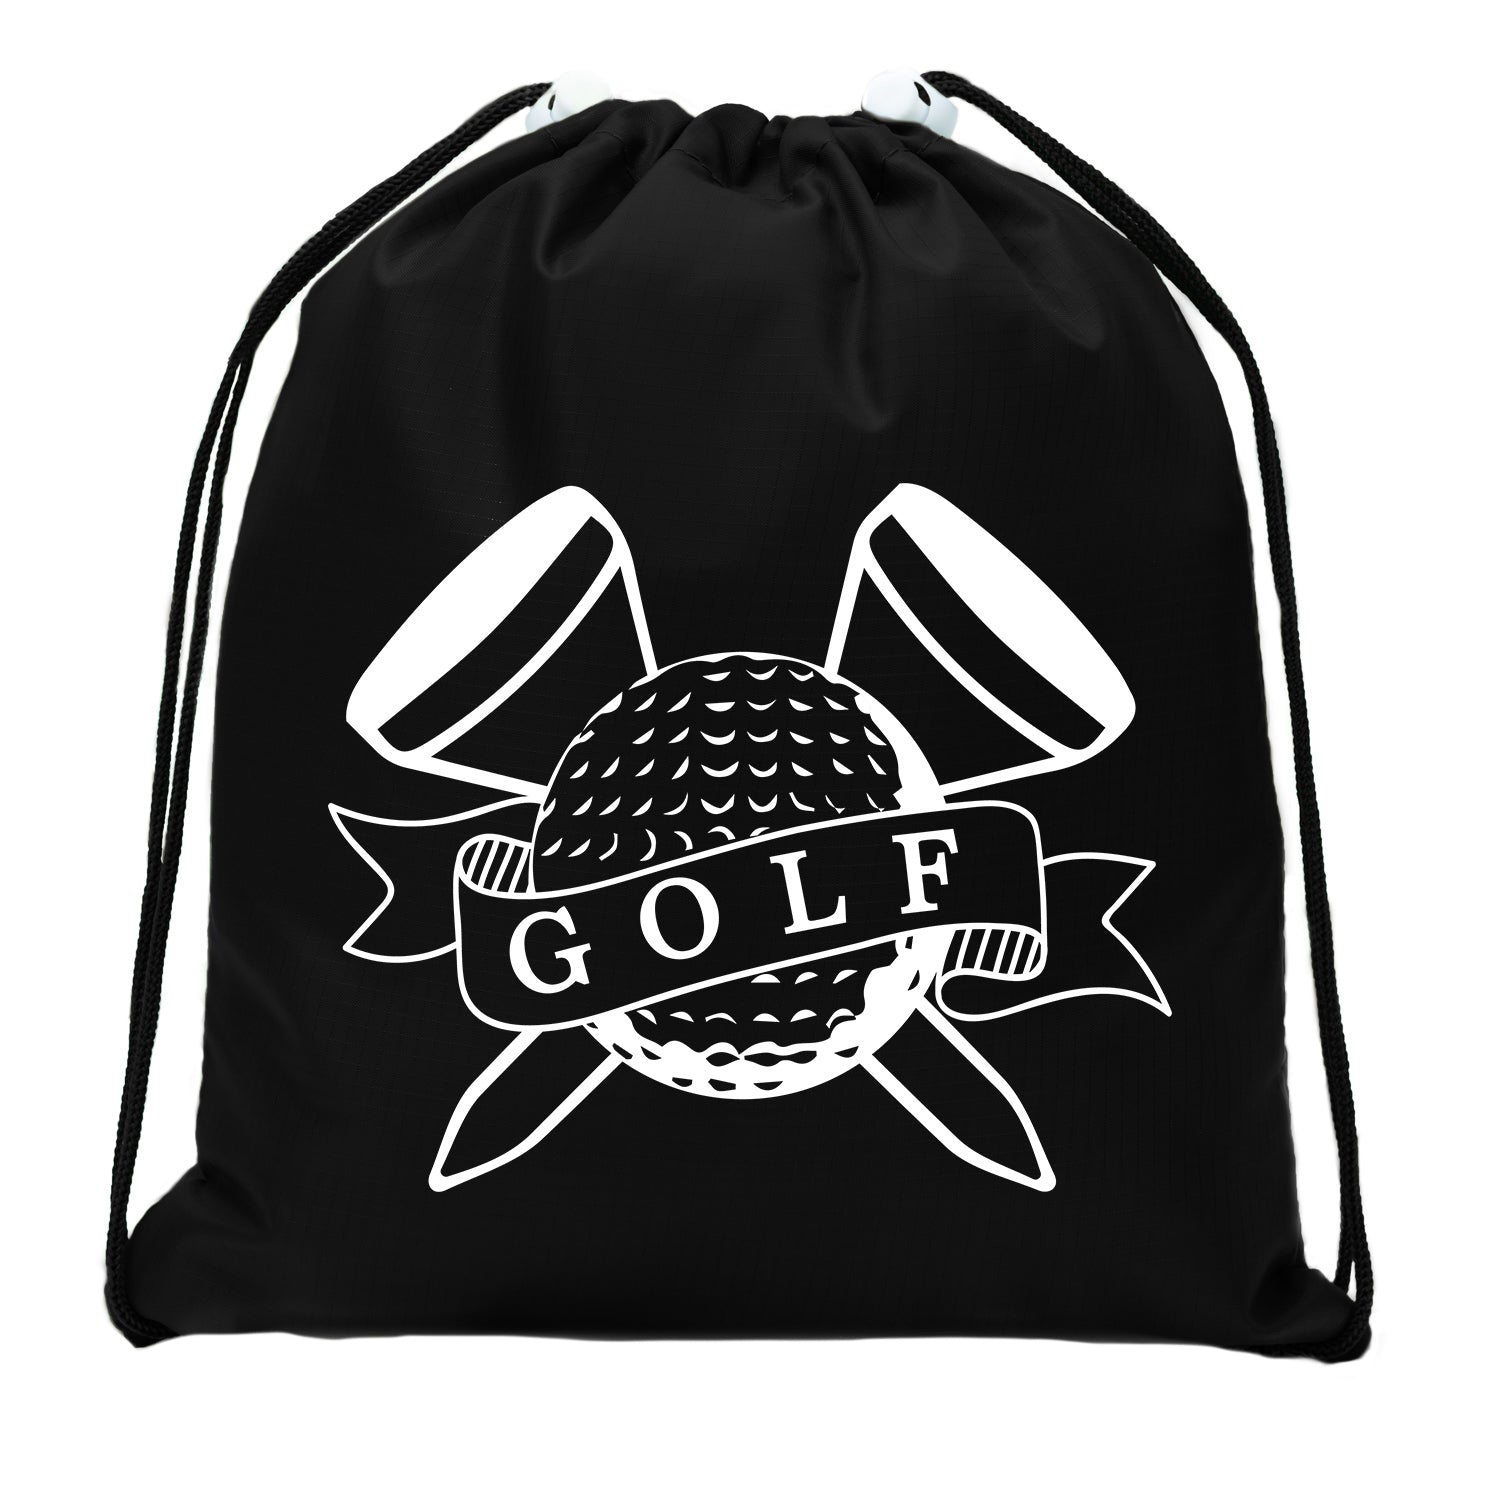 https://matohash.com/cdn/shop/products/golf-ball-tees-mini-polyester-drawstring-bag-617761.jpg?v=1680576502